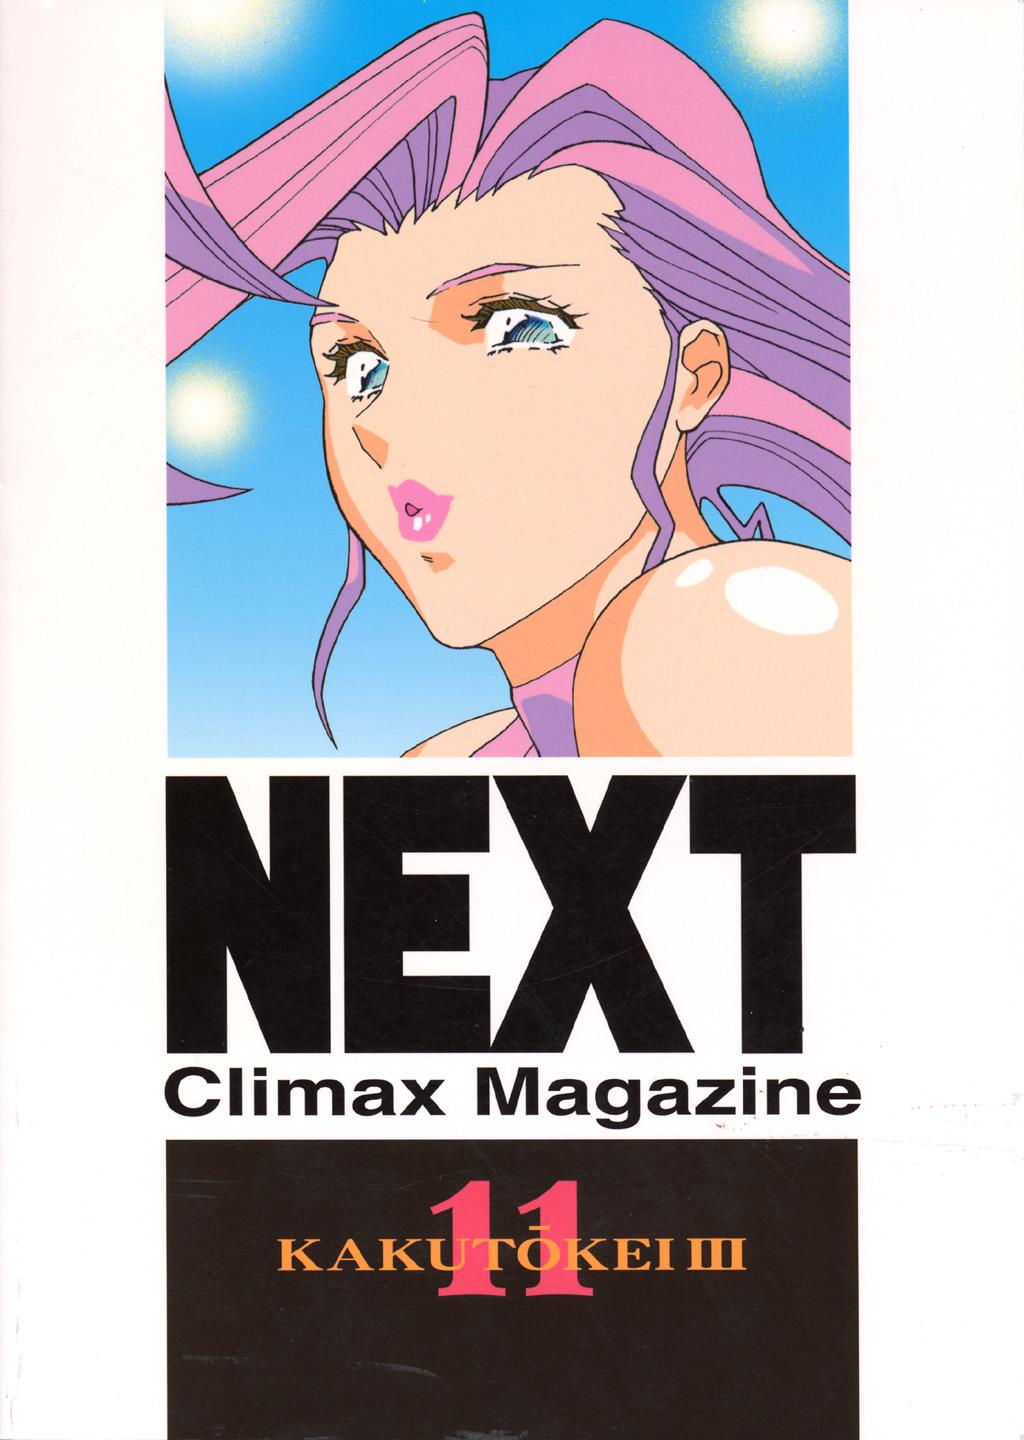 Next Climax Magazine 11 - Kakutokei III 98